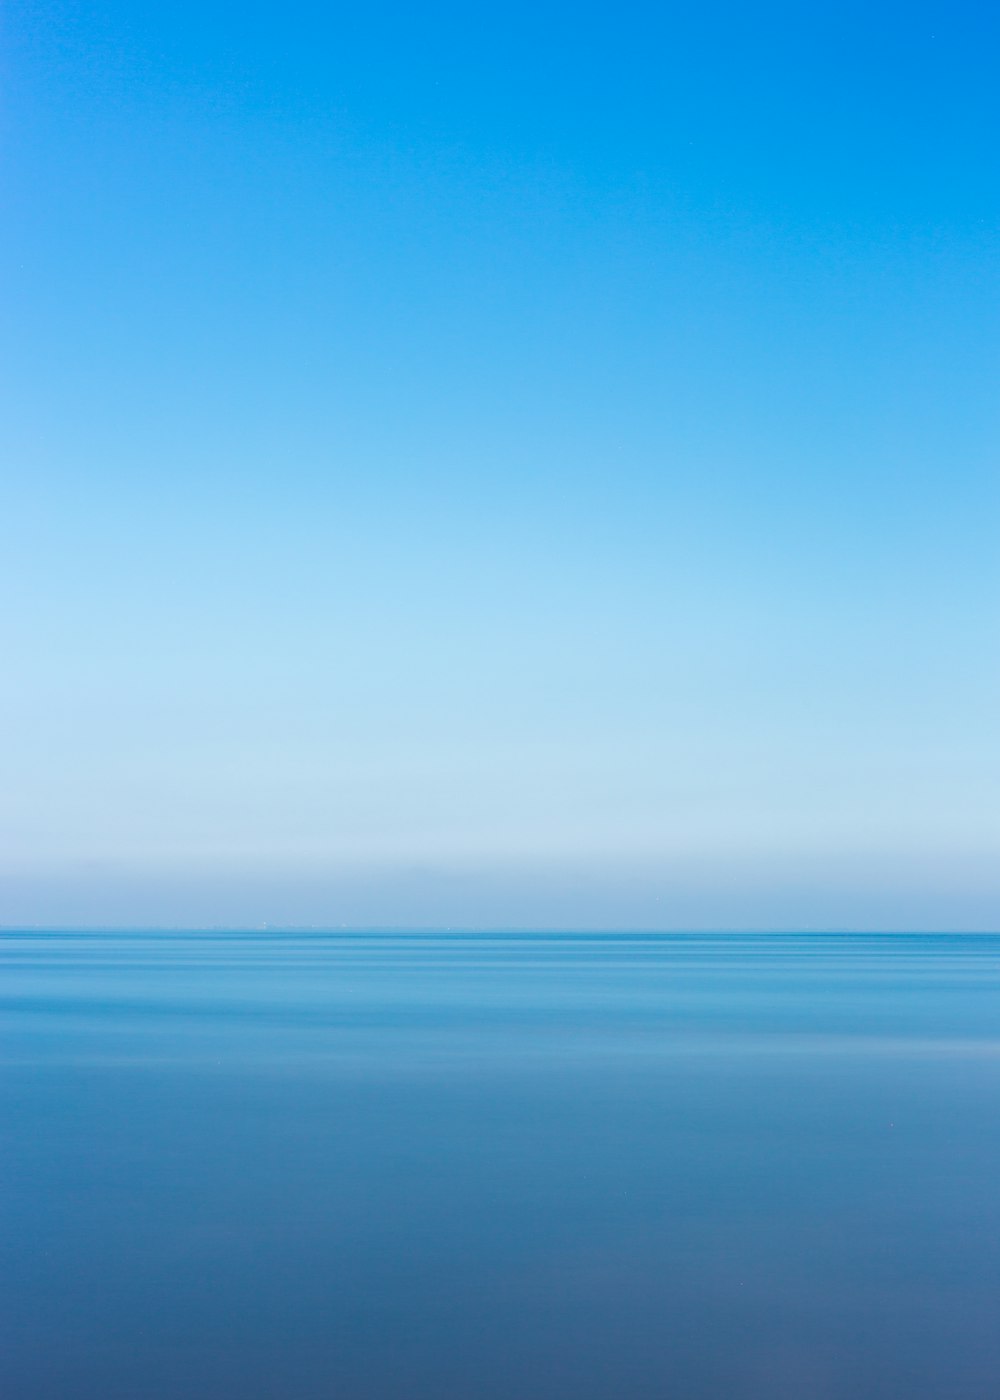 Fotografia dell'oceano blu